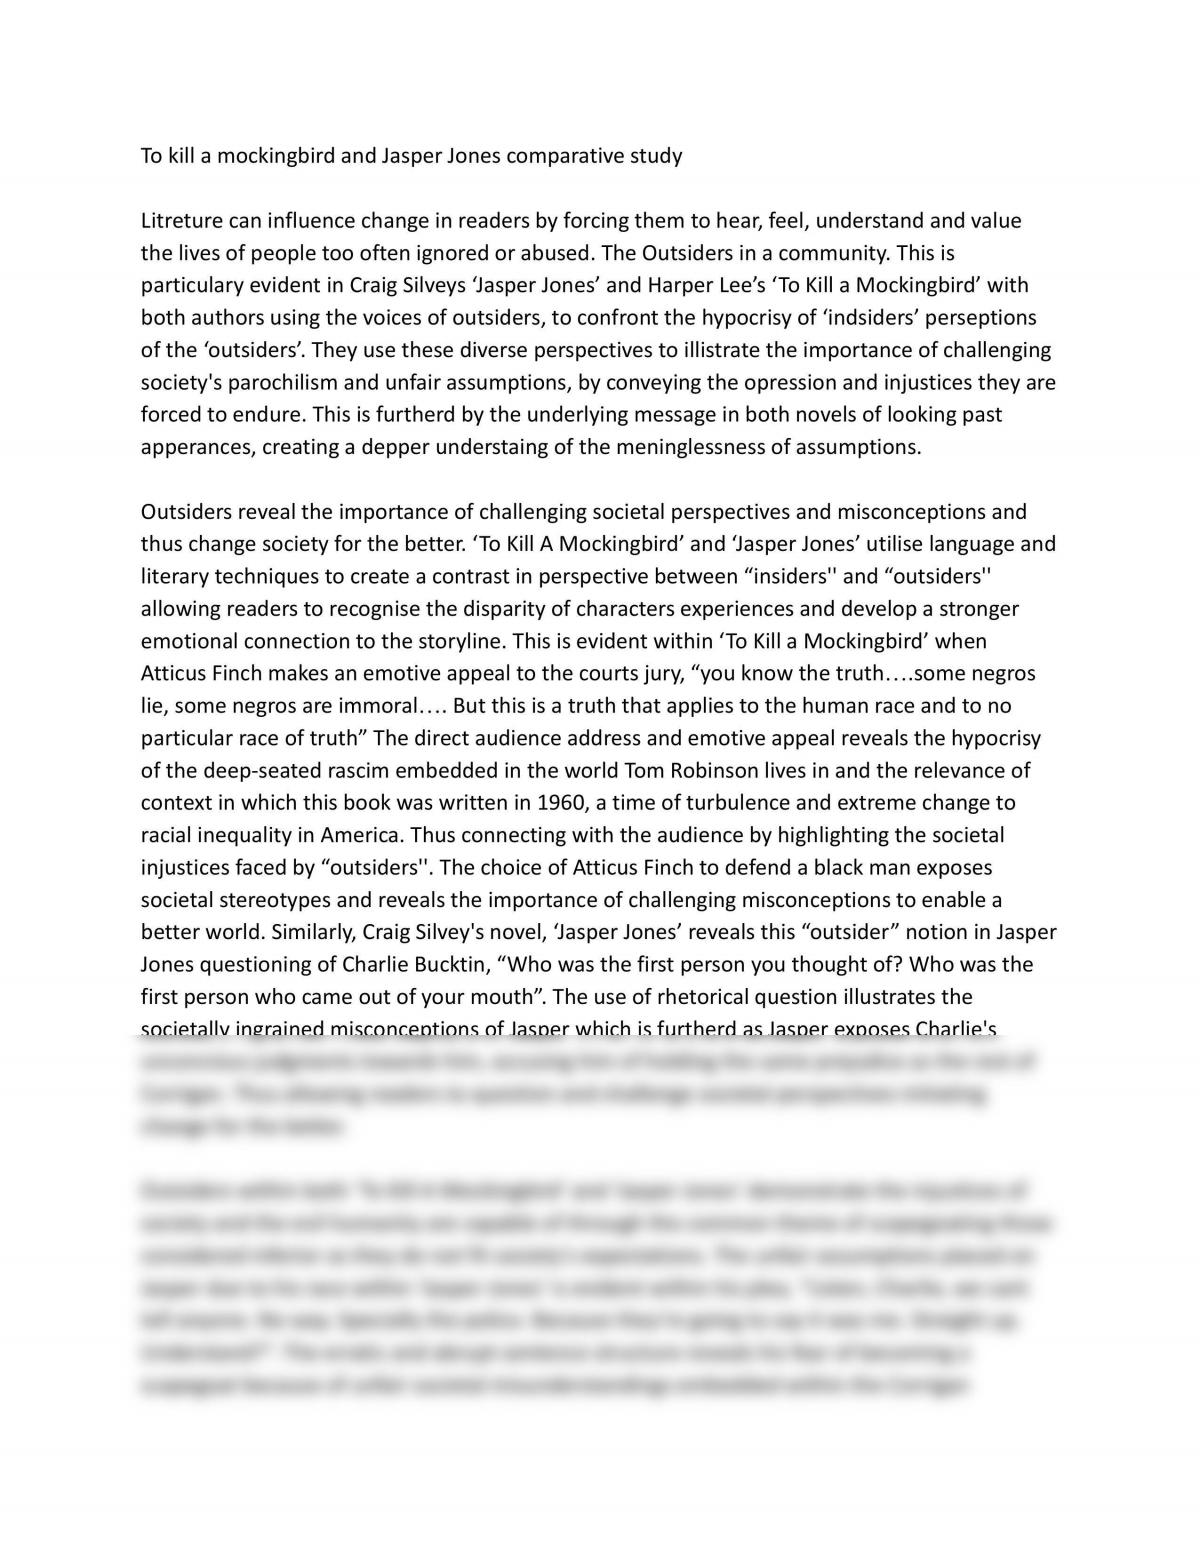 To Kill a Mockingbird and Jasper Jones Essay  - Page 1